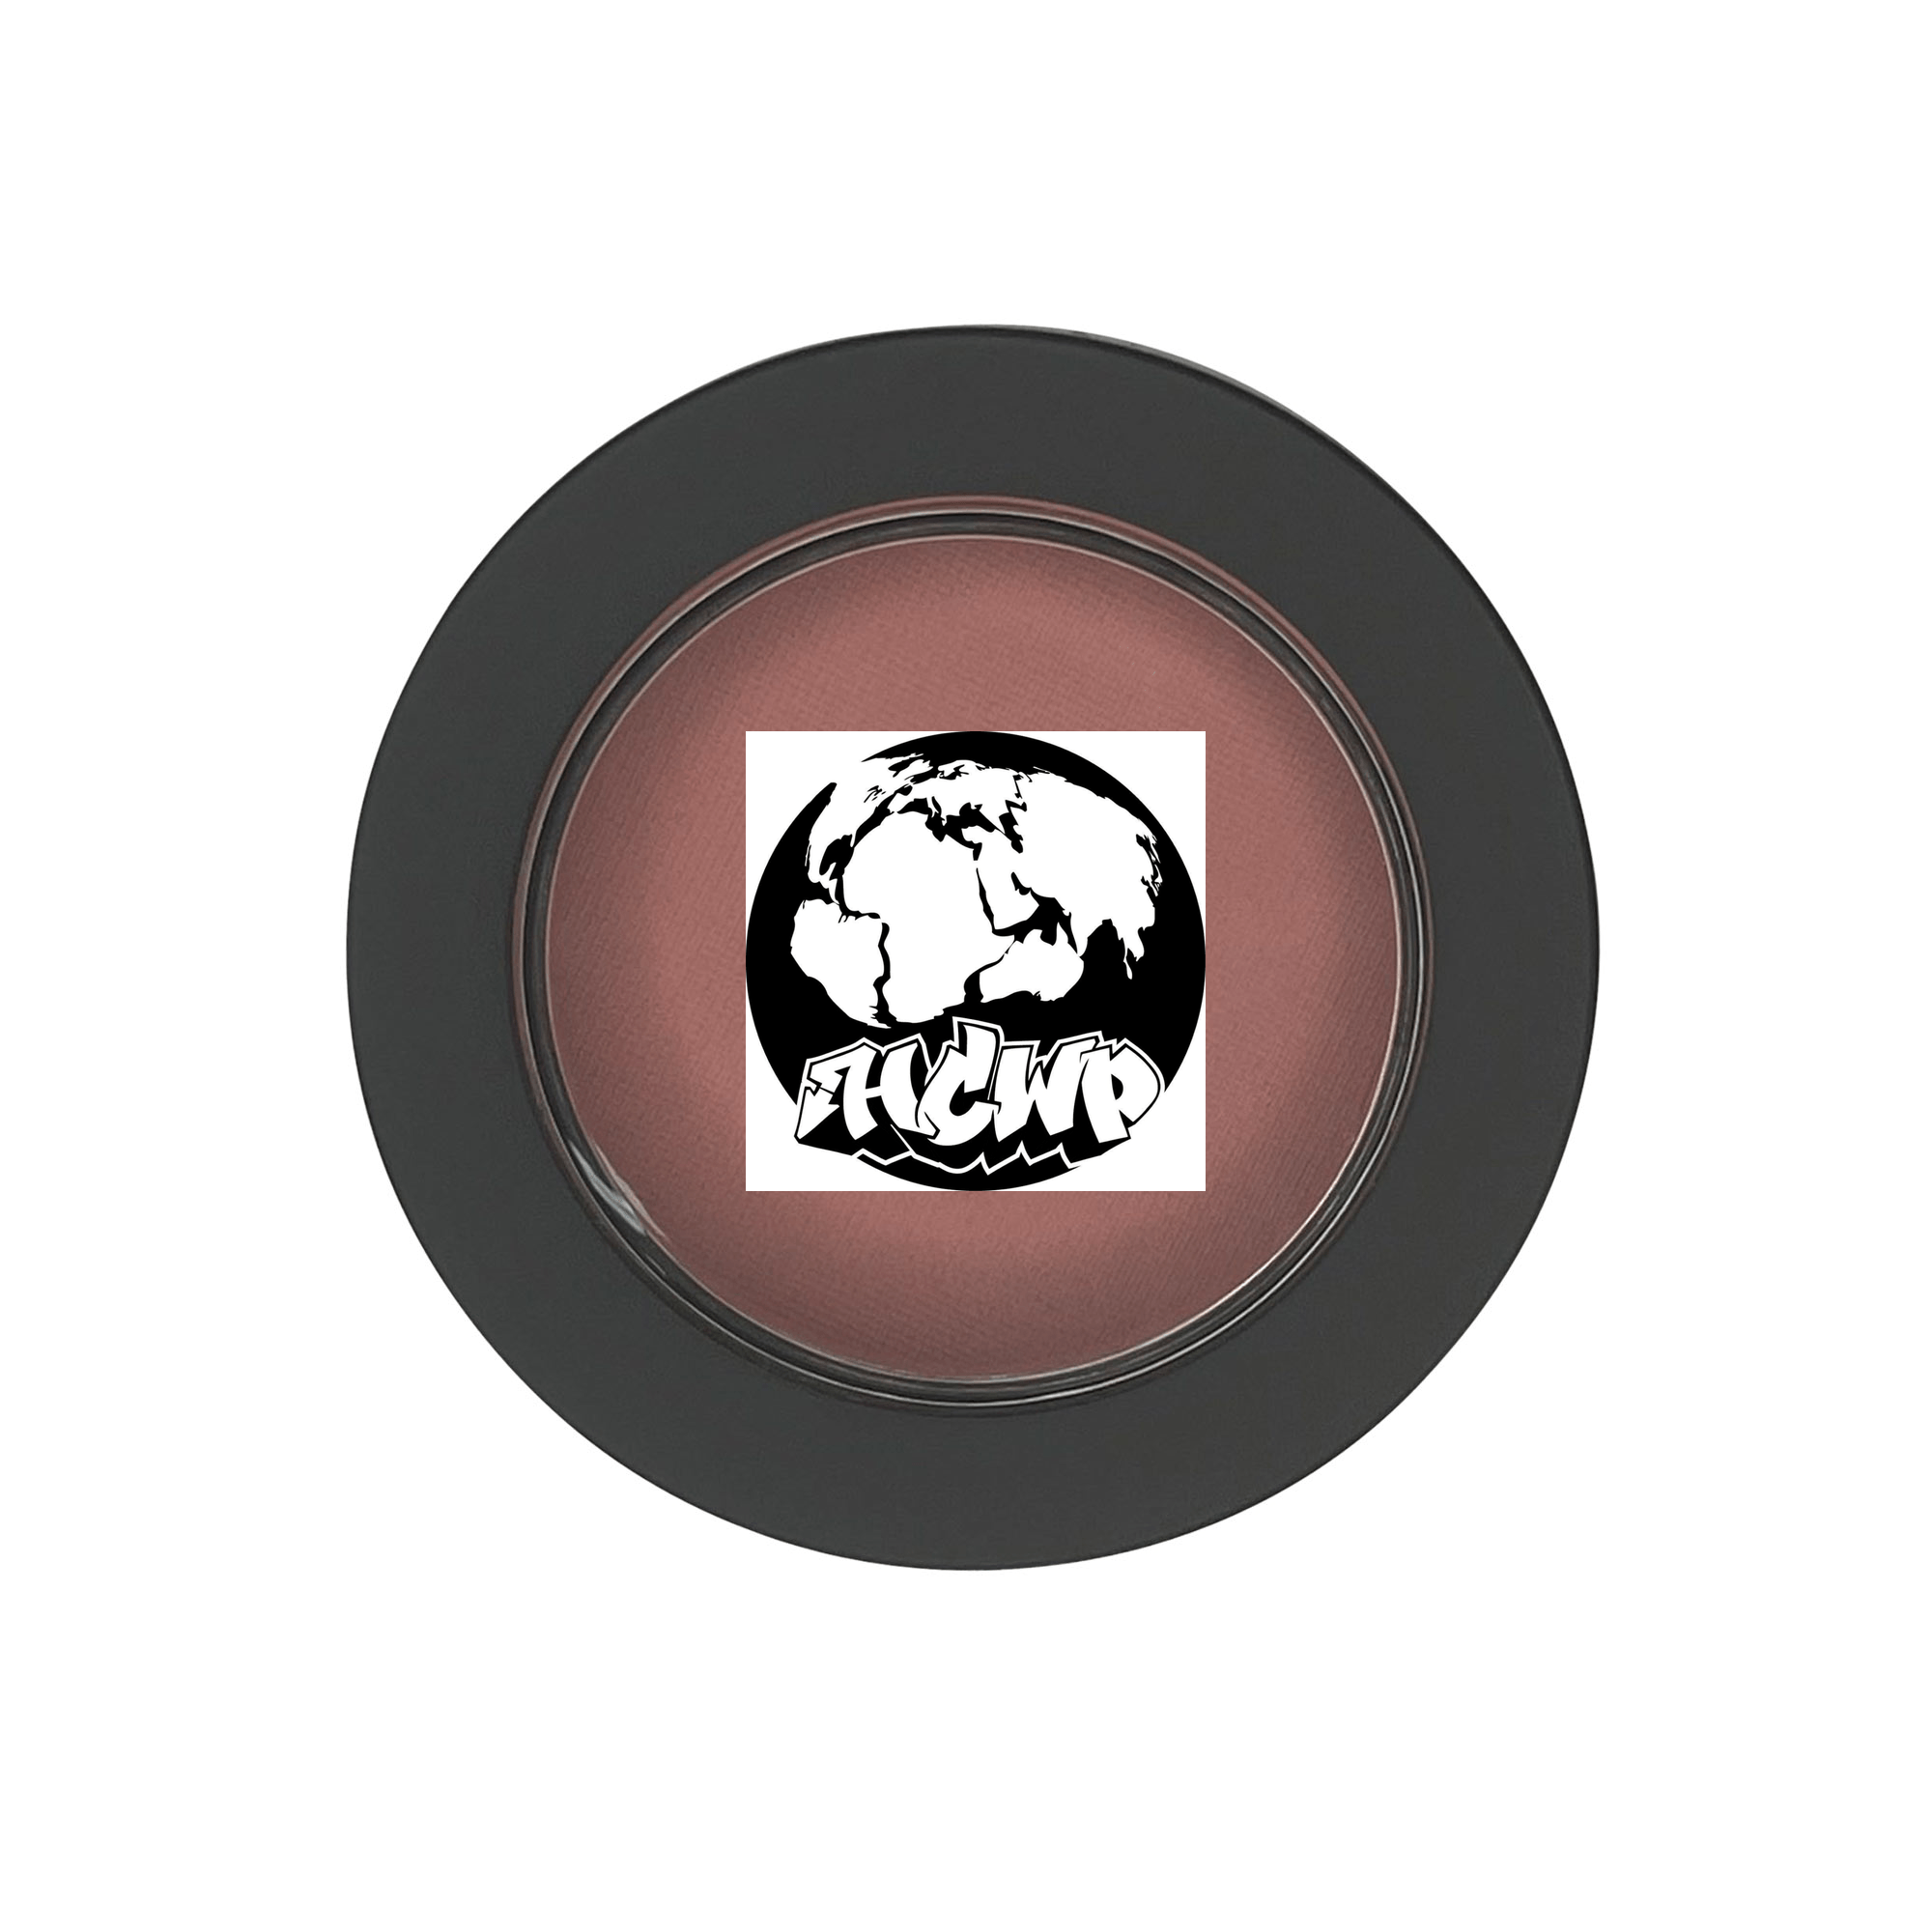 Single Pan Blush - Macaron - HCWP 